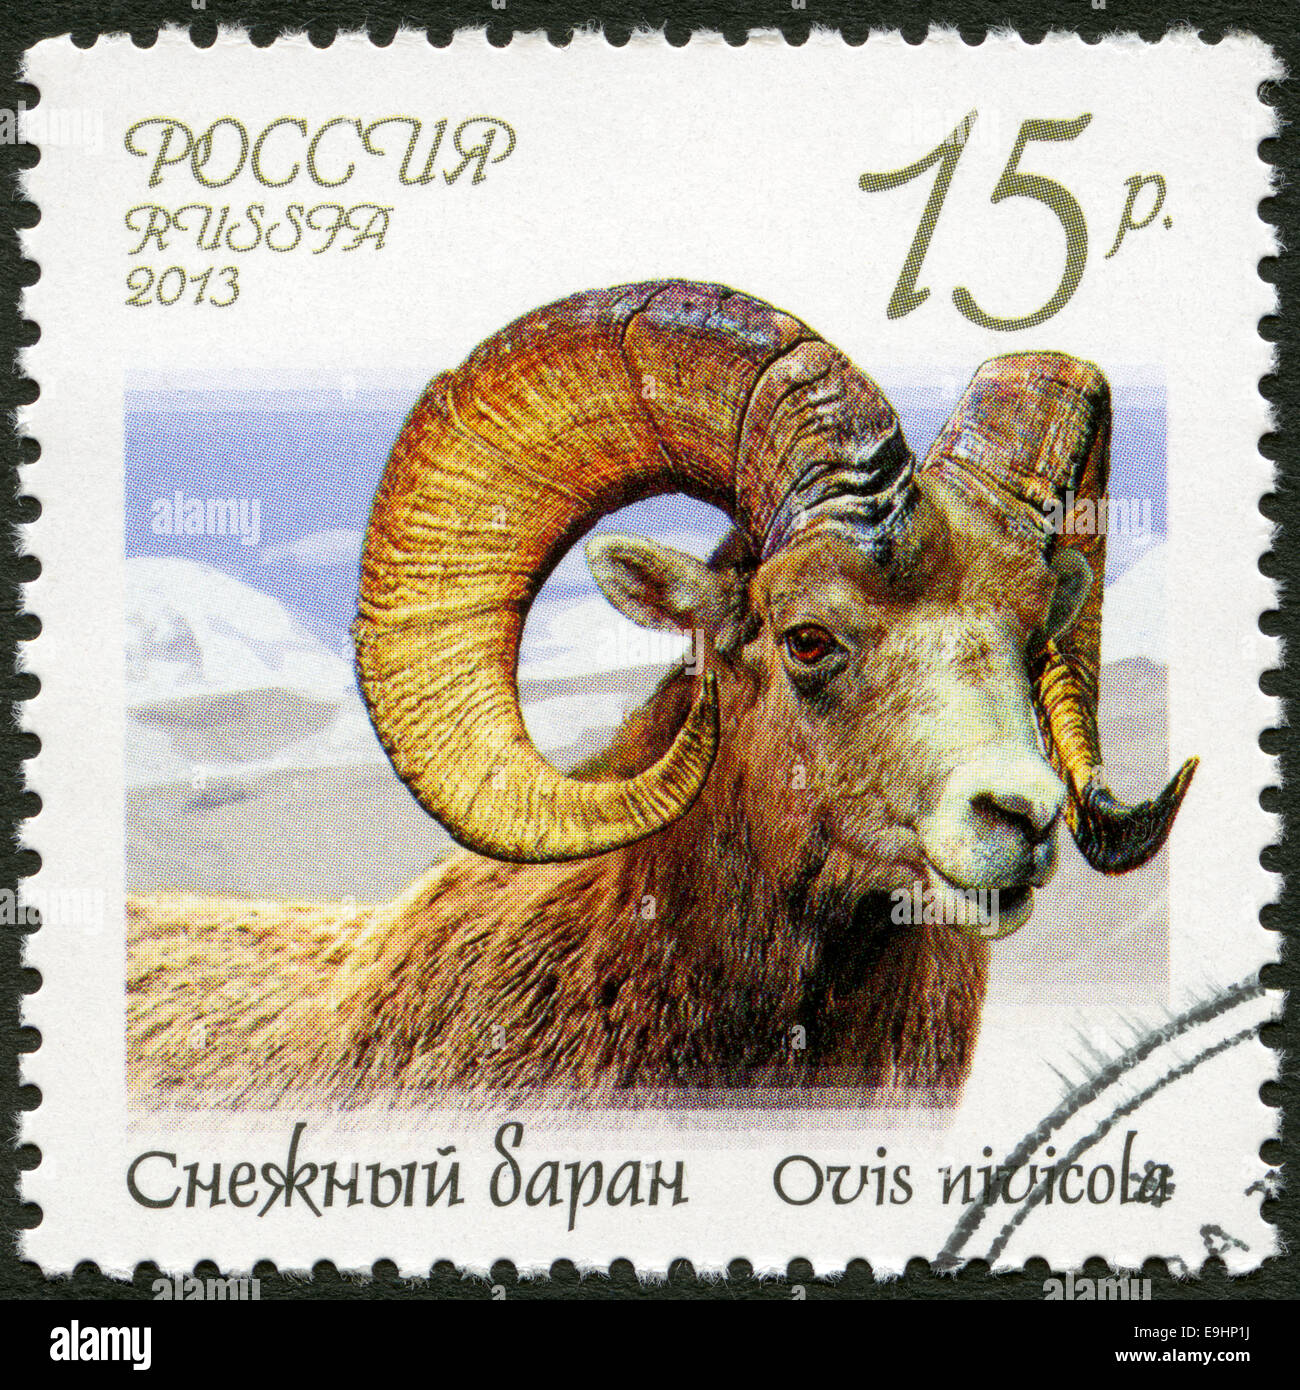 Russie - 2013 : neige montre (Ovis nivicola), série Faune de la Russie, des chèvres sauvages et des béliers Banque D'Images